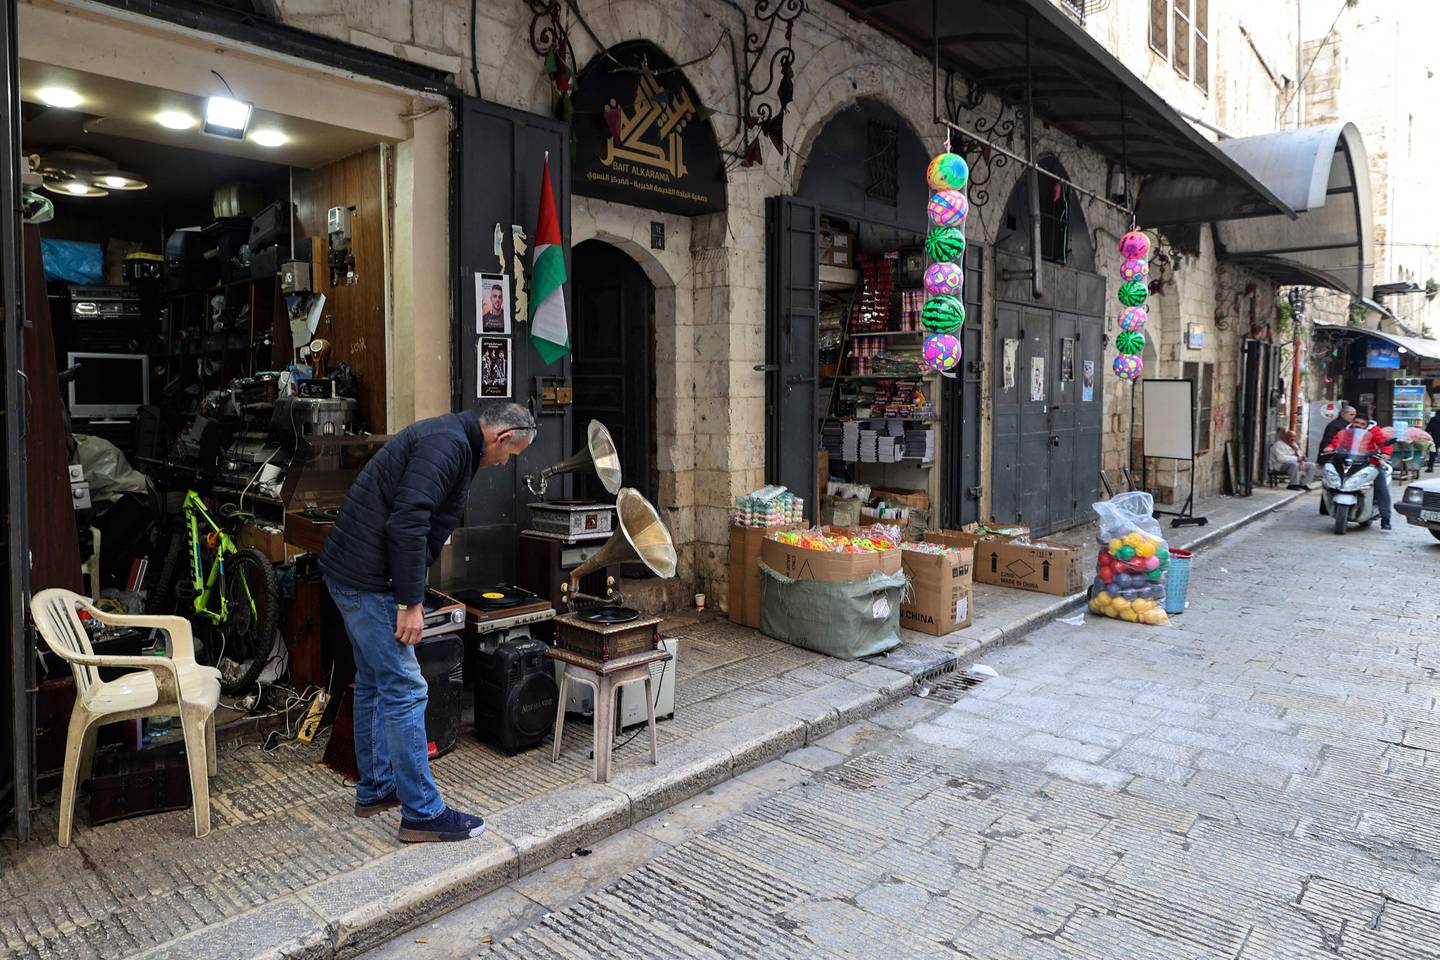 Hemmou expose de vieux tourne-disques devant sa boutique.  AFP